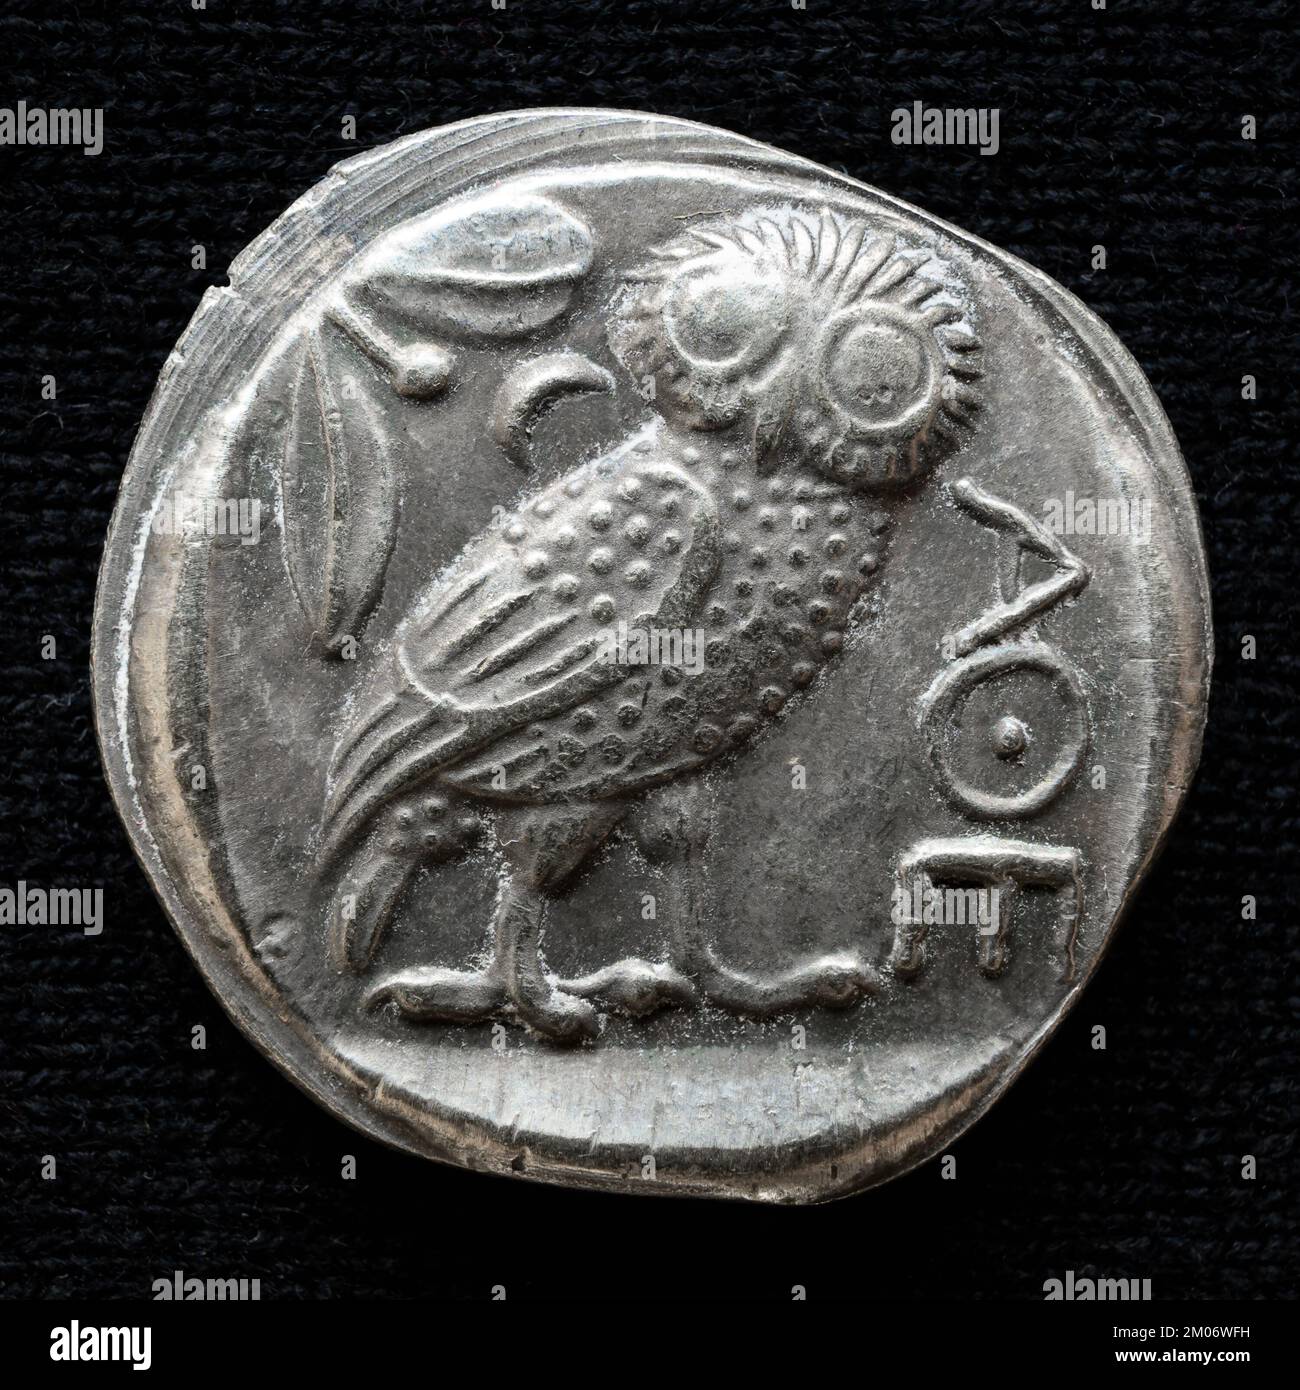 Antica moneta greca con civetta e iscrizione Atene. Vecchi soldi rari, tetradrachm argento isolato su sfondo scuro, macro. Concetto di Grecia, valore Foto Stock